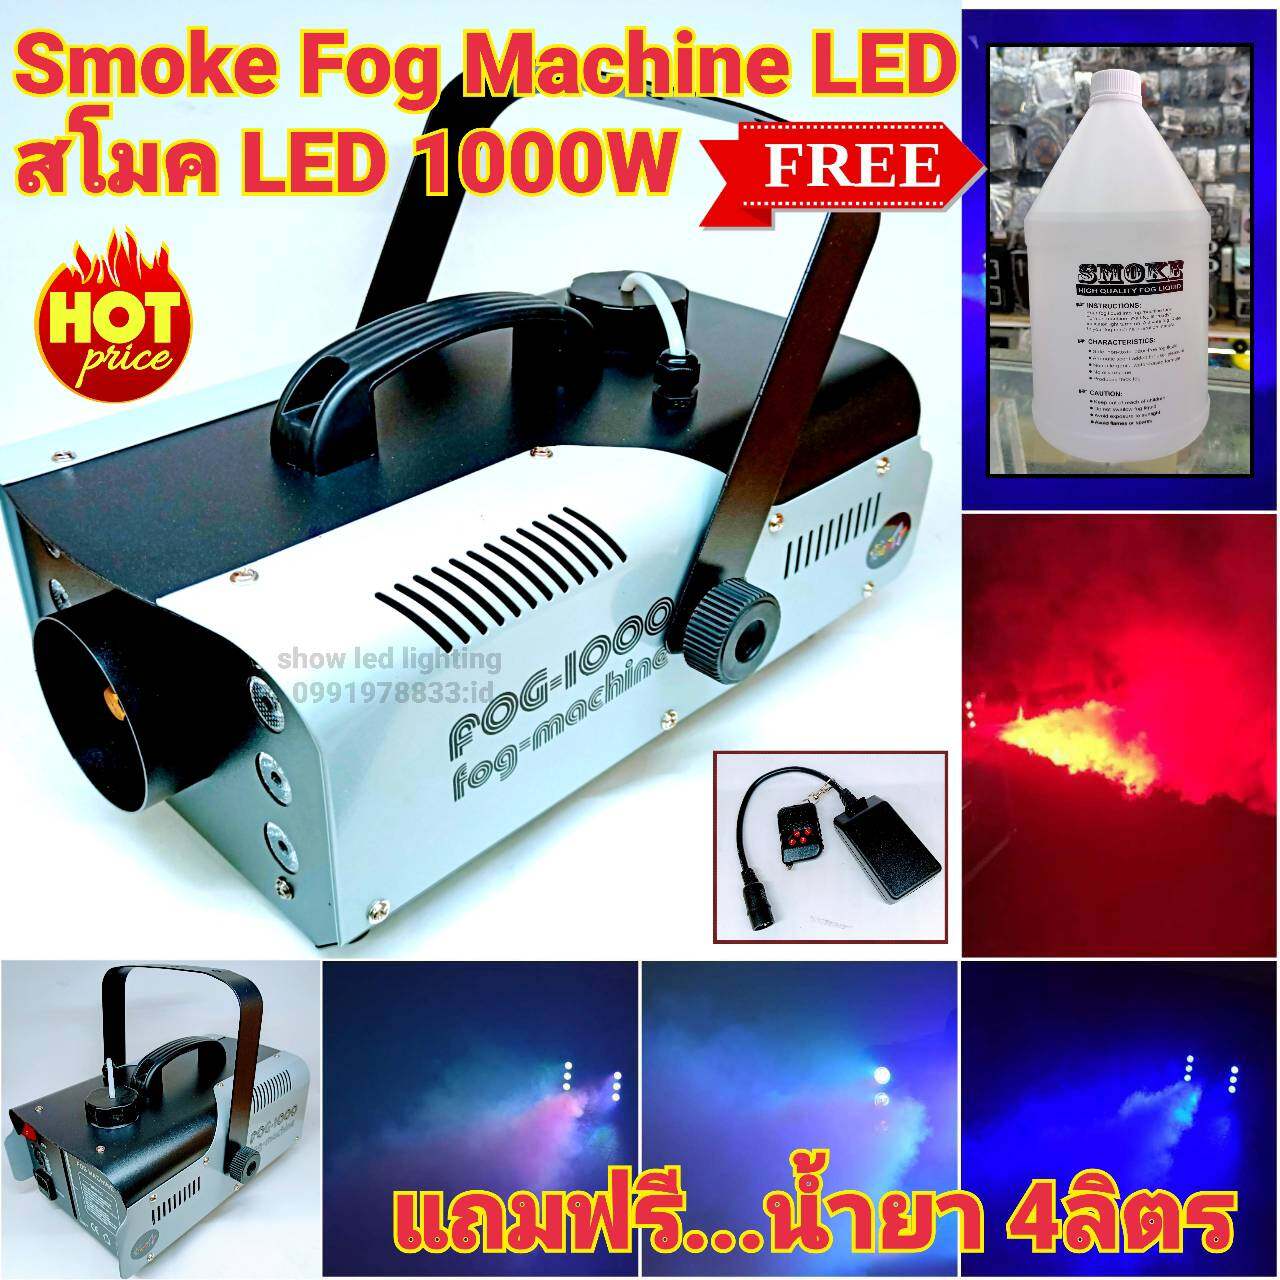 Smoke 1000w LED ฟรี..พร้อมน้ำยา 1เกลอน 4ลิตรFog machine สโมค1000w มีรีโมทเครื่องทำควันเครื่องทำไดรไอซ์ สำหรับไฟดิสโก้เลเซอร์